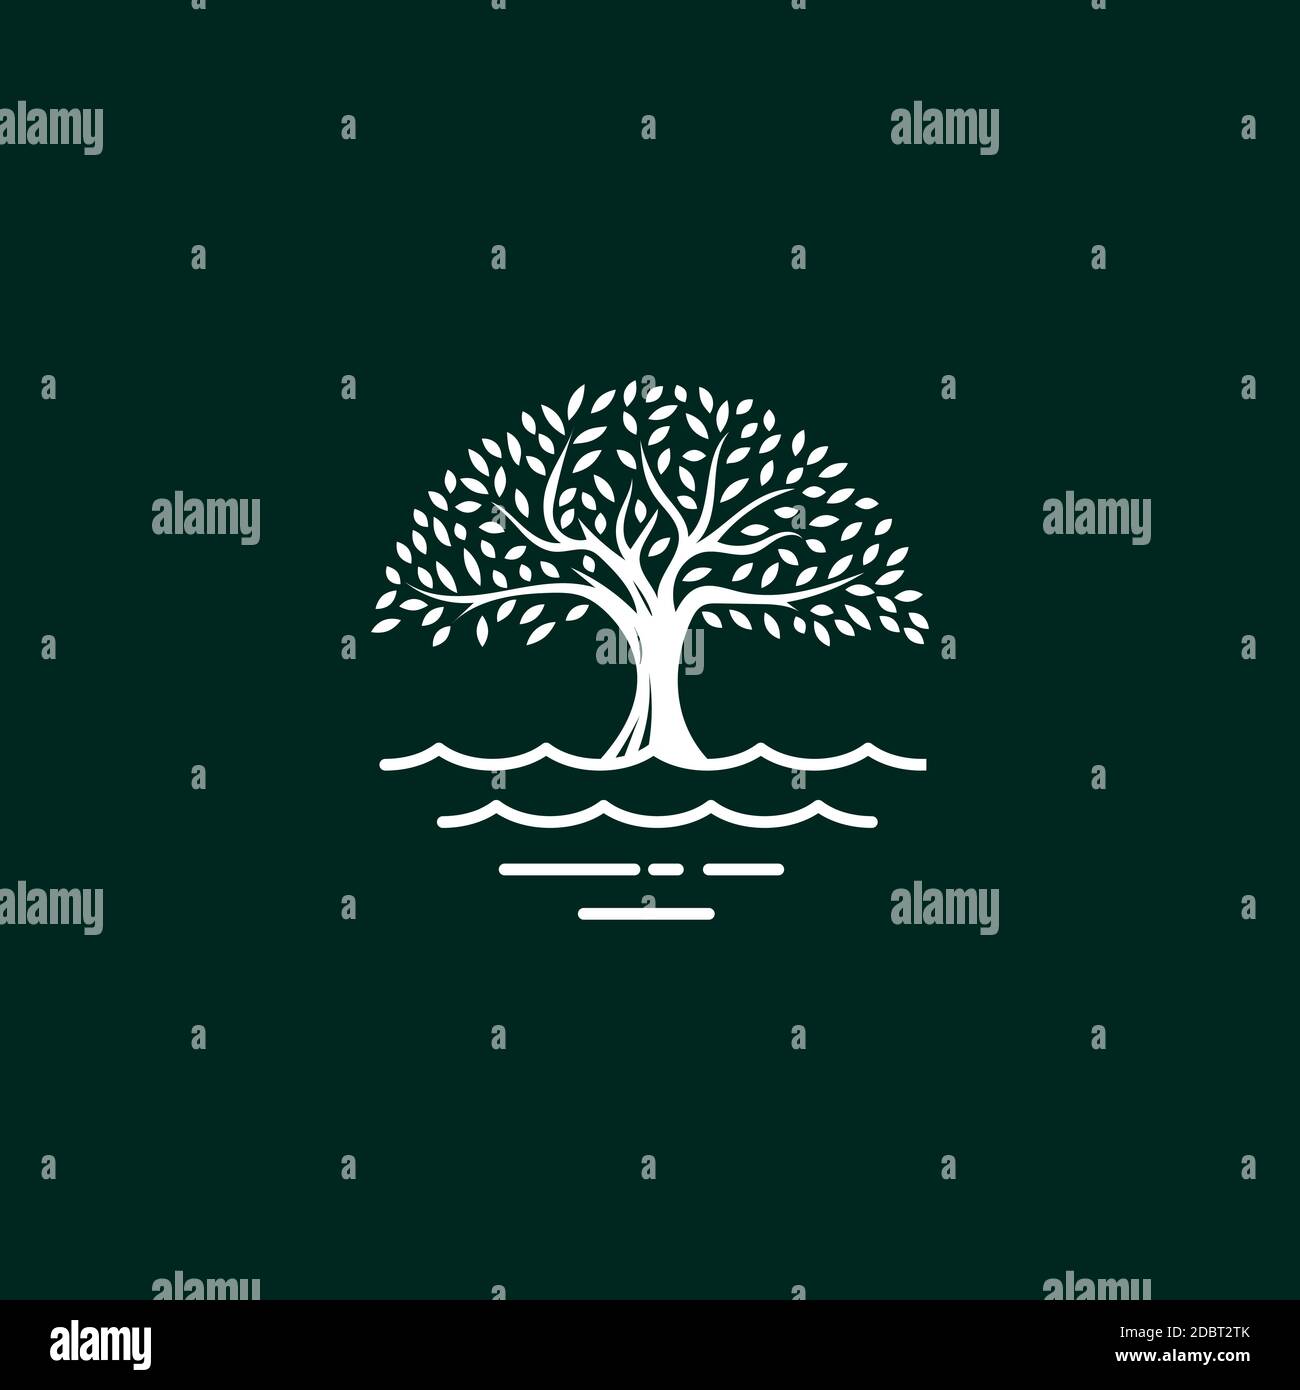 Baum Logo Design Vektor Vorlage.Baum und Wasser Symbol Stock Vektor